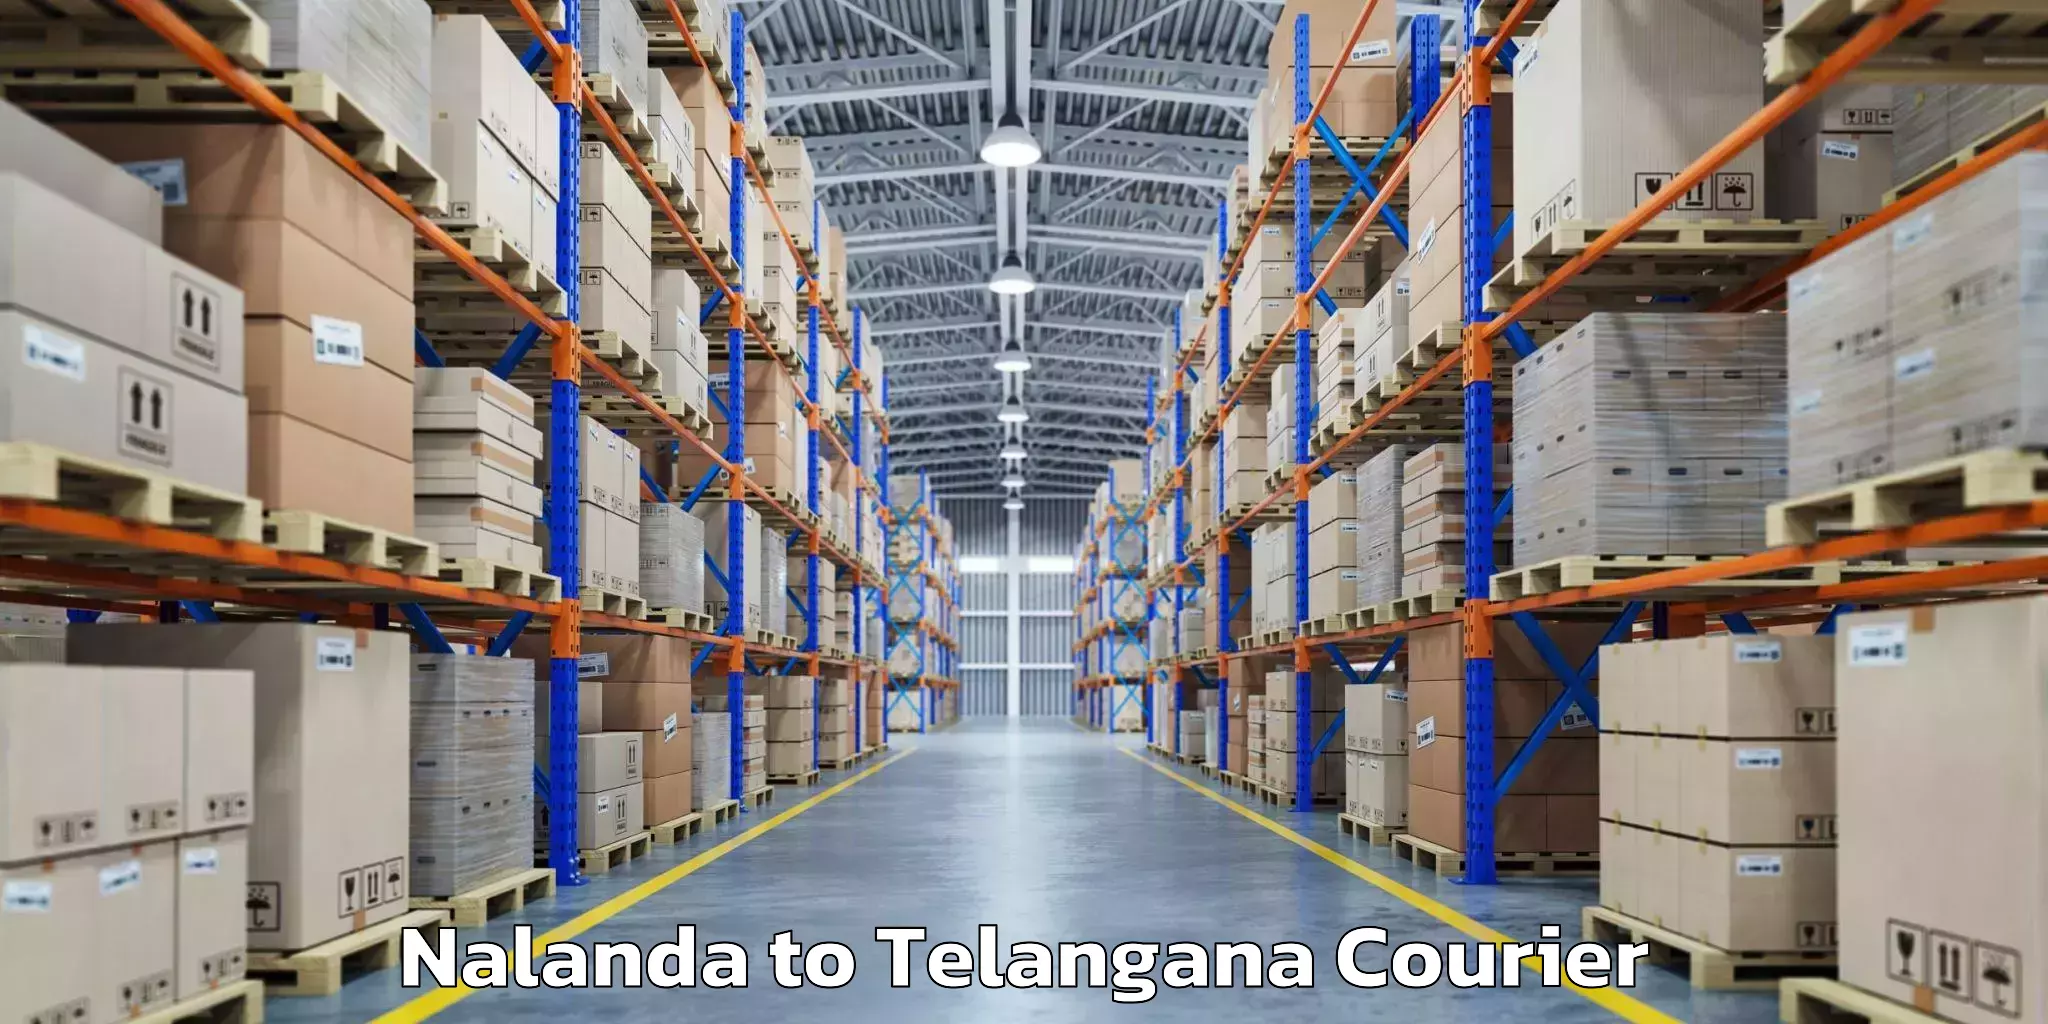 Urgent luggage shipment Nalanda to Madgulapally